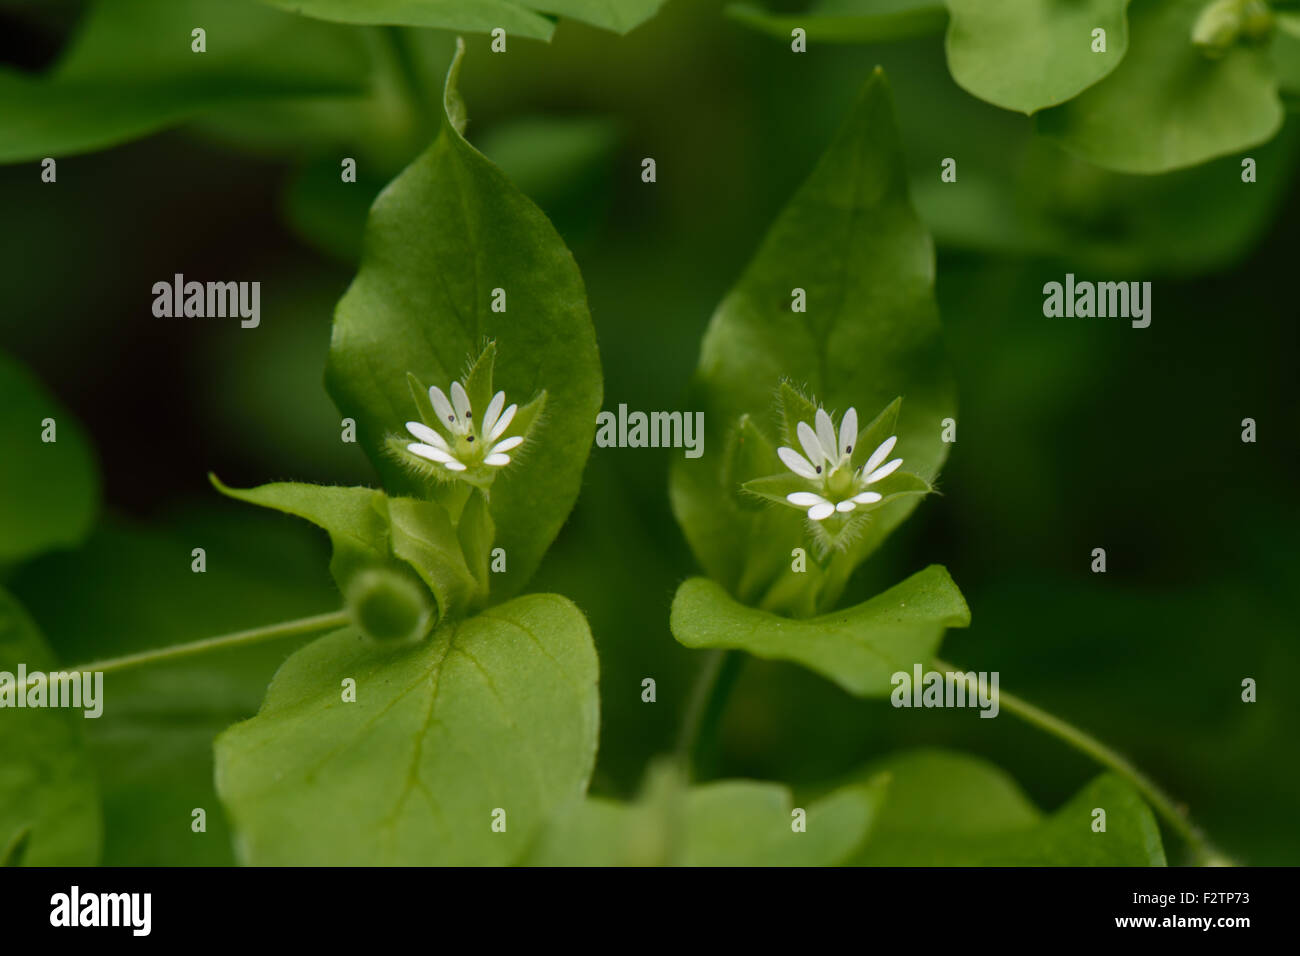 Le mouron des oiseaux, Stellaria media, petites fleurs blanches et vert des feuilles d'une herbe annuelle de terres arables, Berkshire, Août Banque D'Images